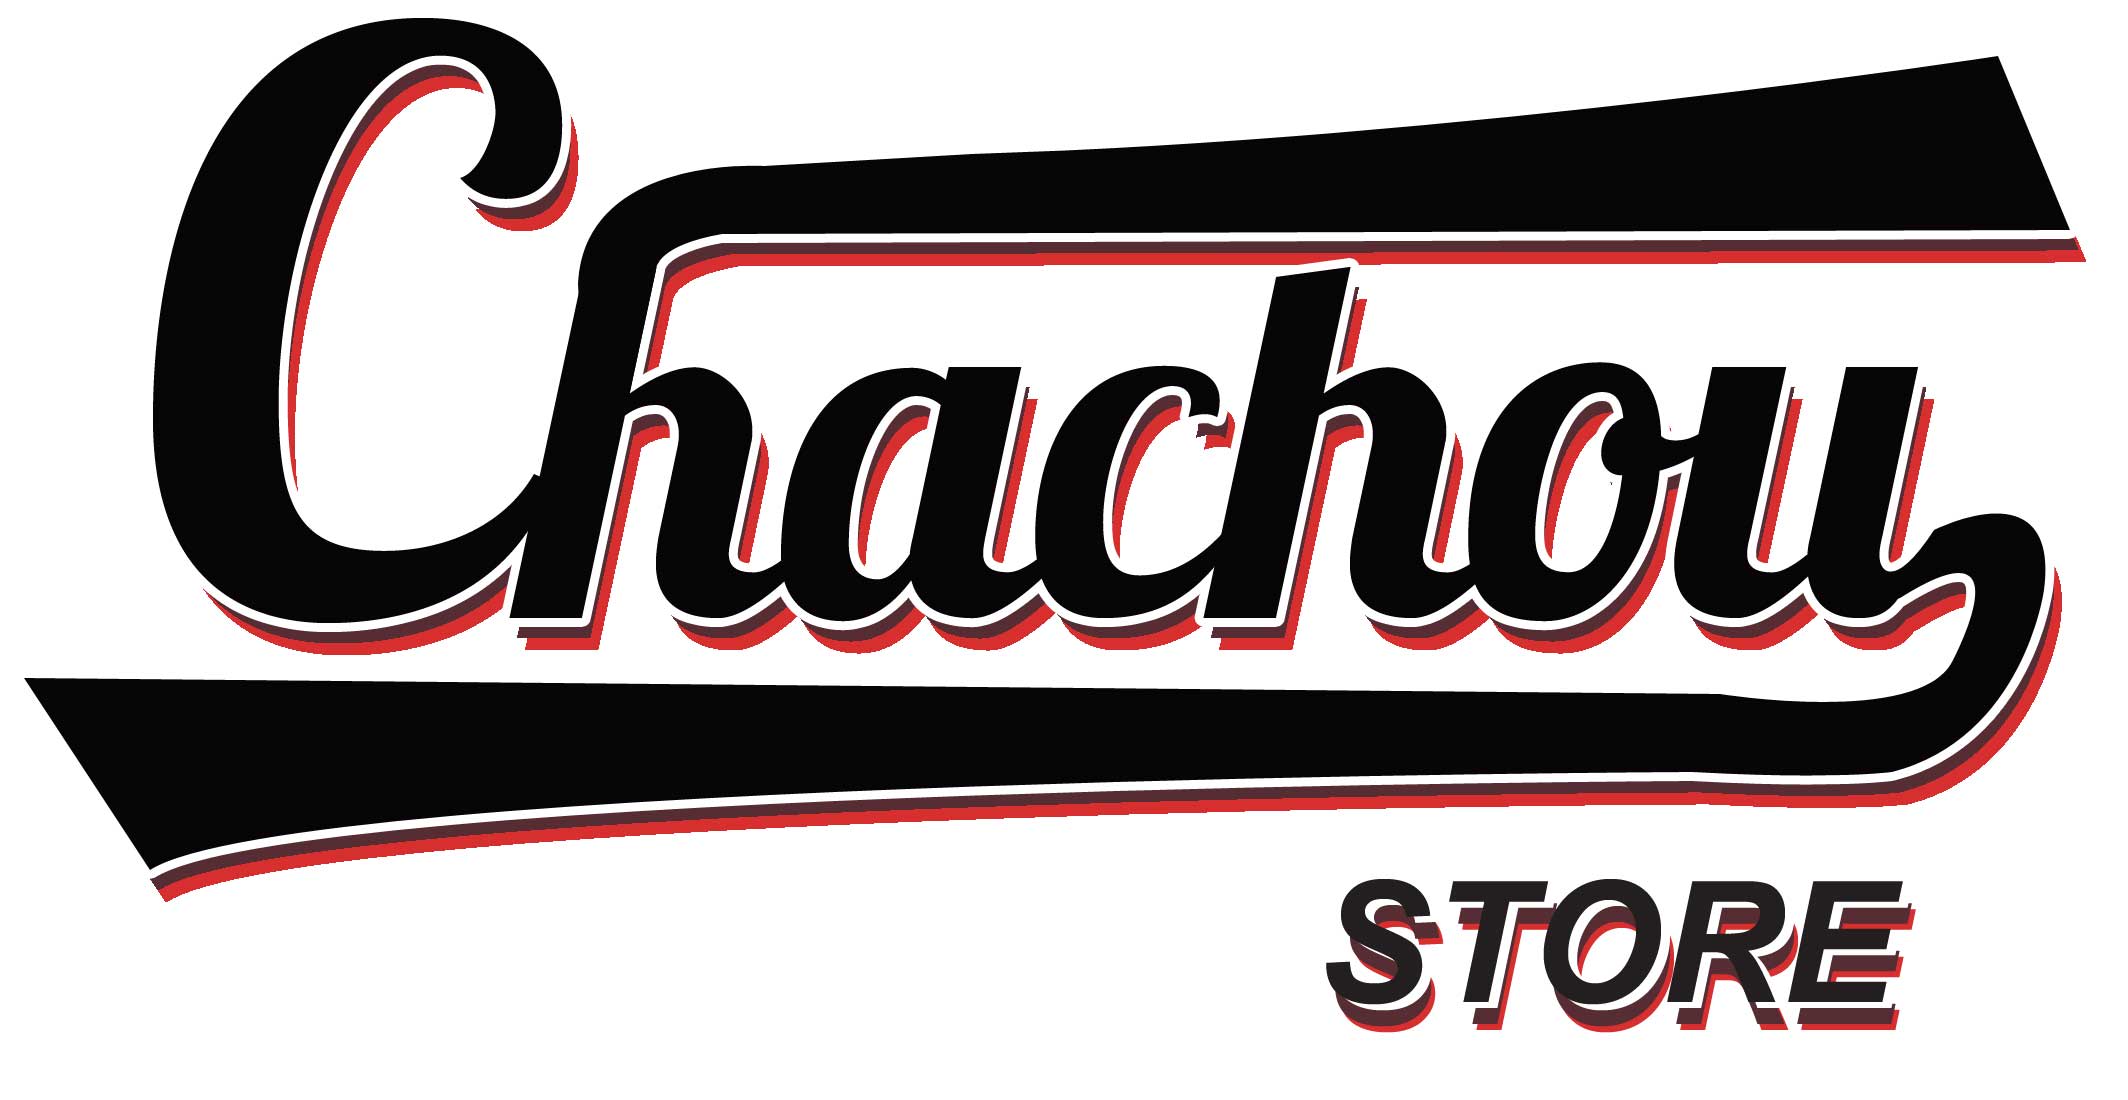 Chauchou Store